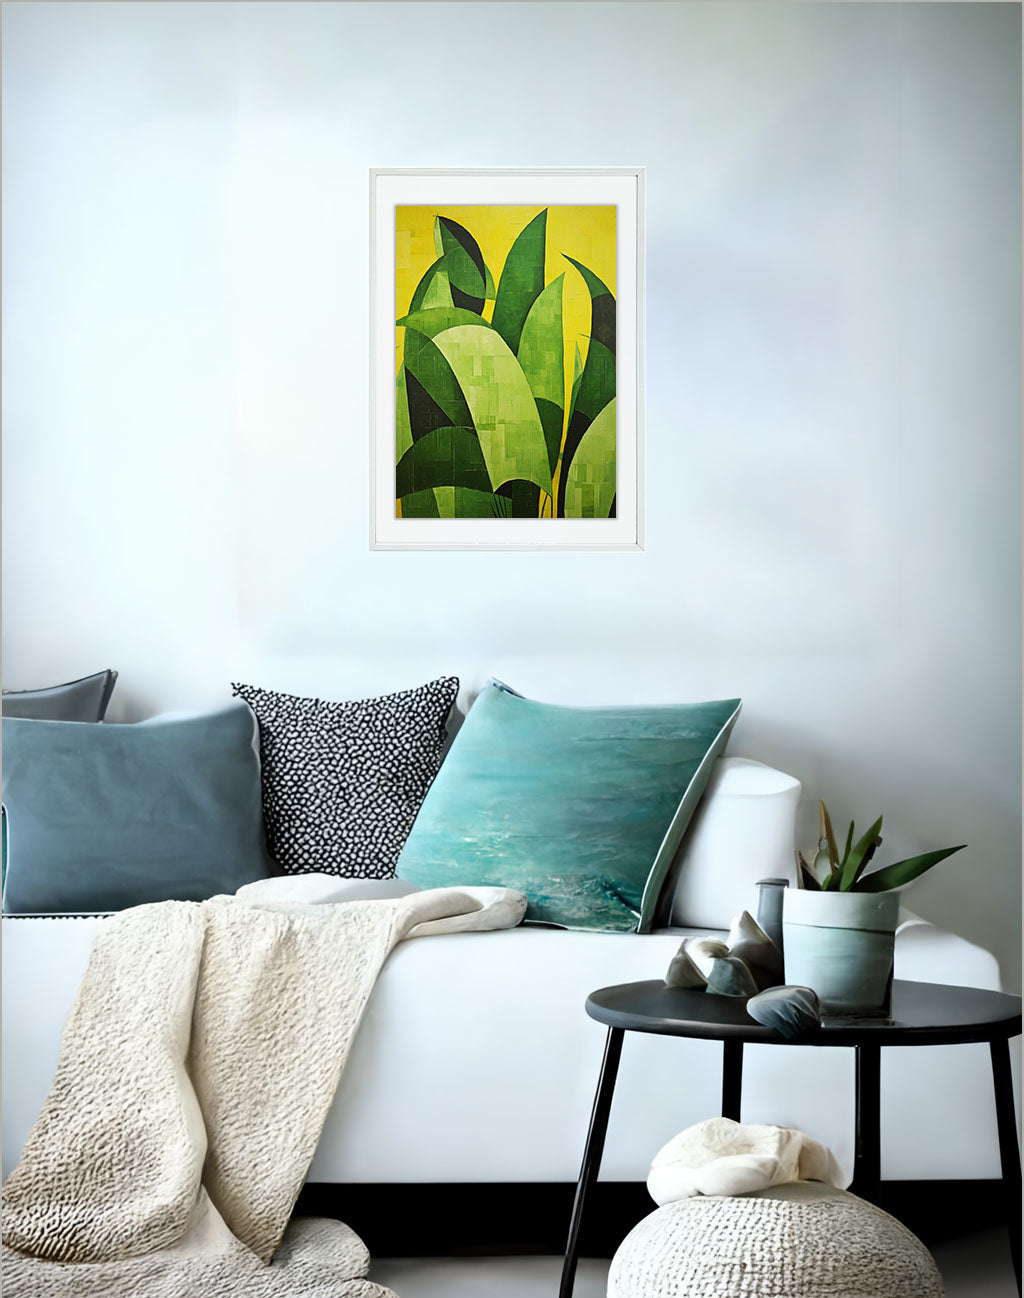 バナナのアートポスター:banana_4893 / キッチン_フルーツと野菜_のポスター画像ソファ近くに設置したイメージ